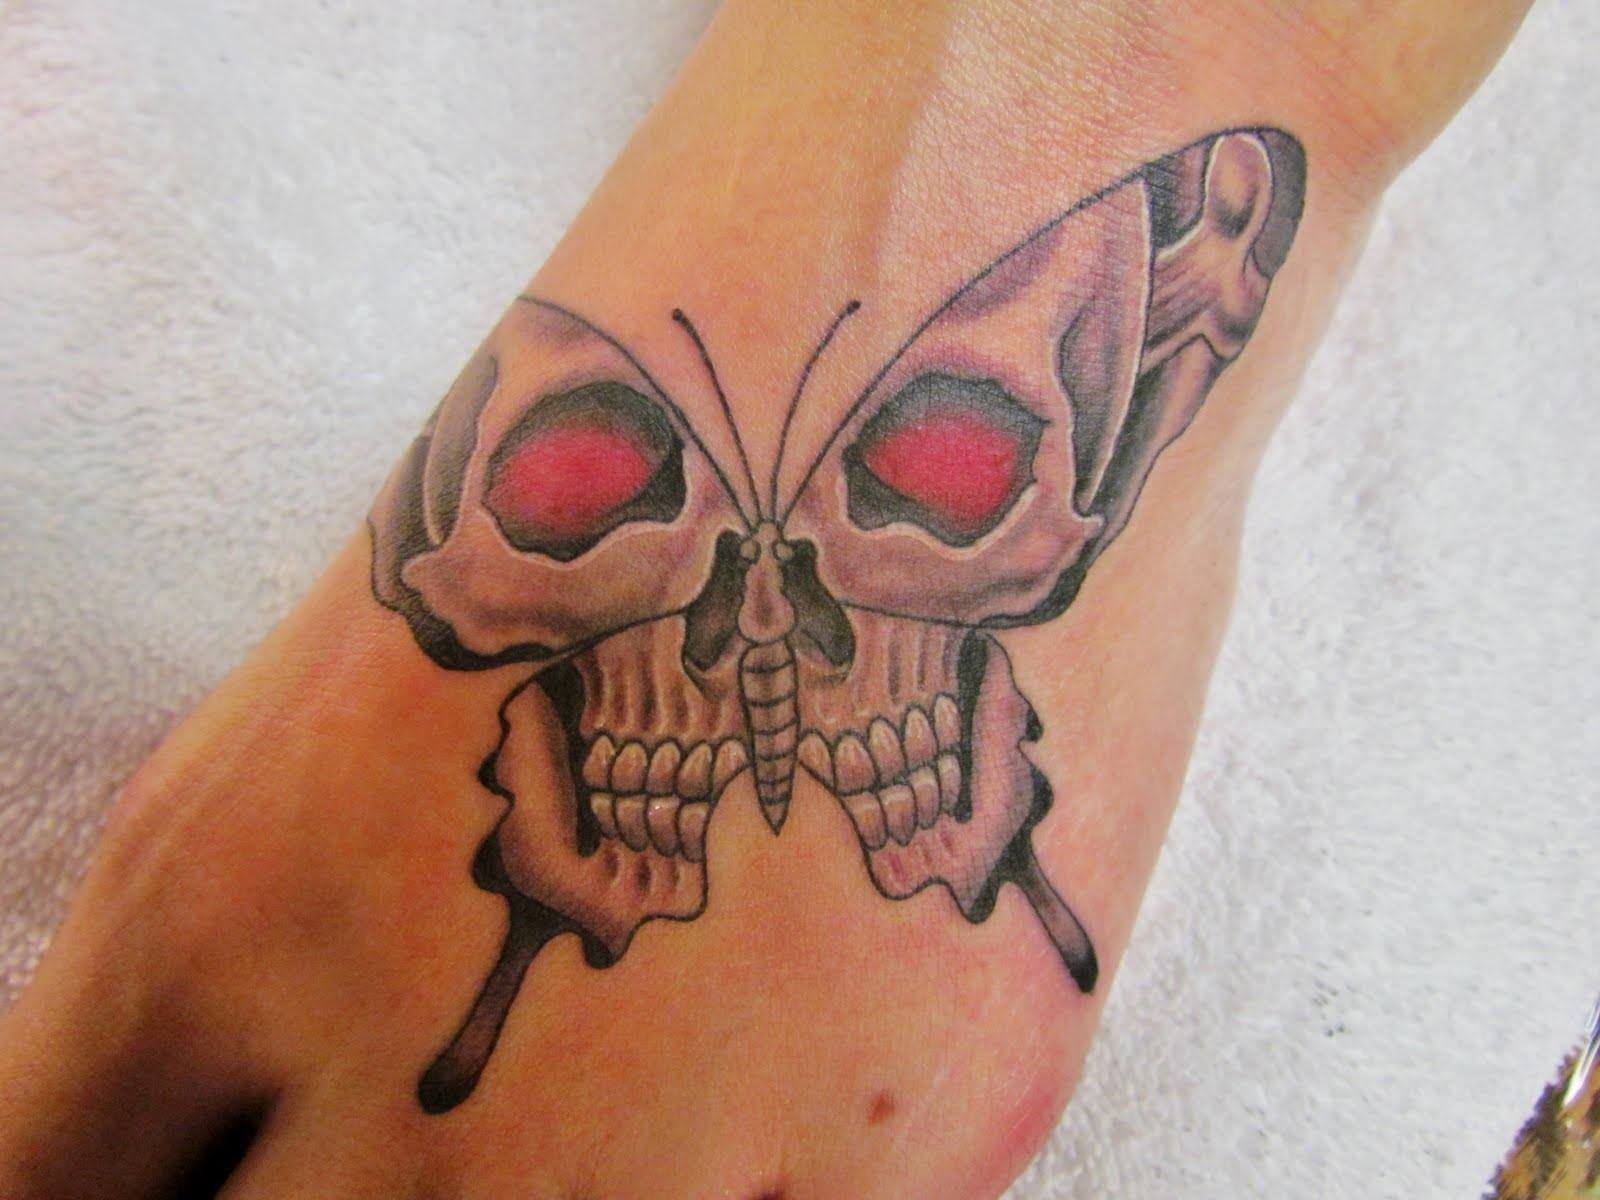  feminine skull tattoos